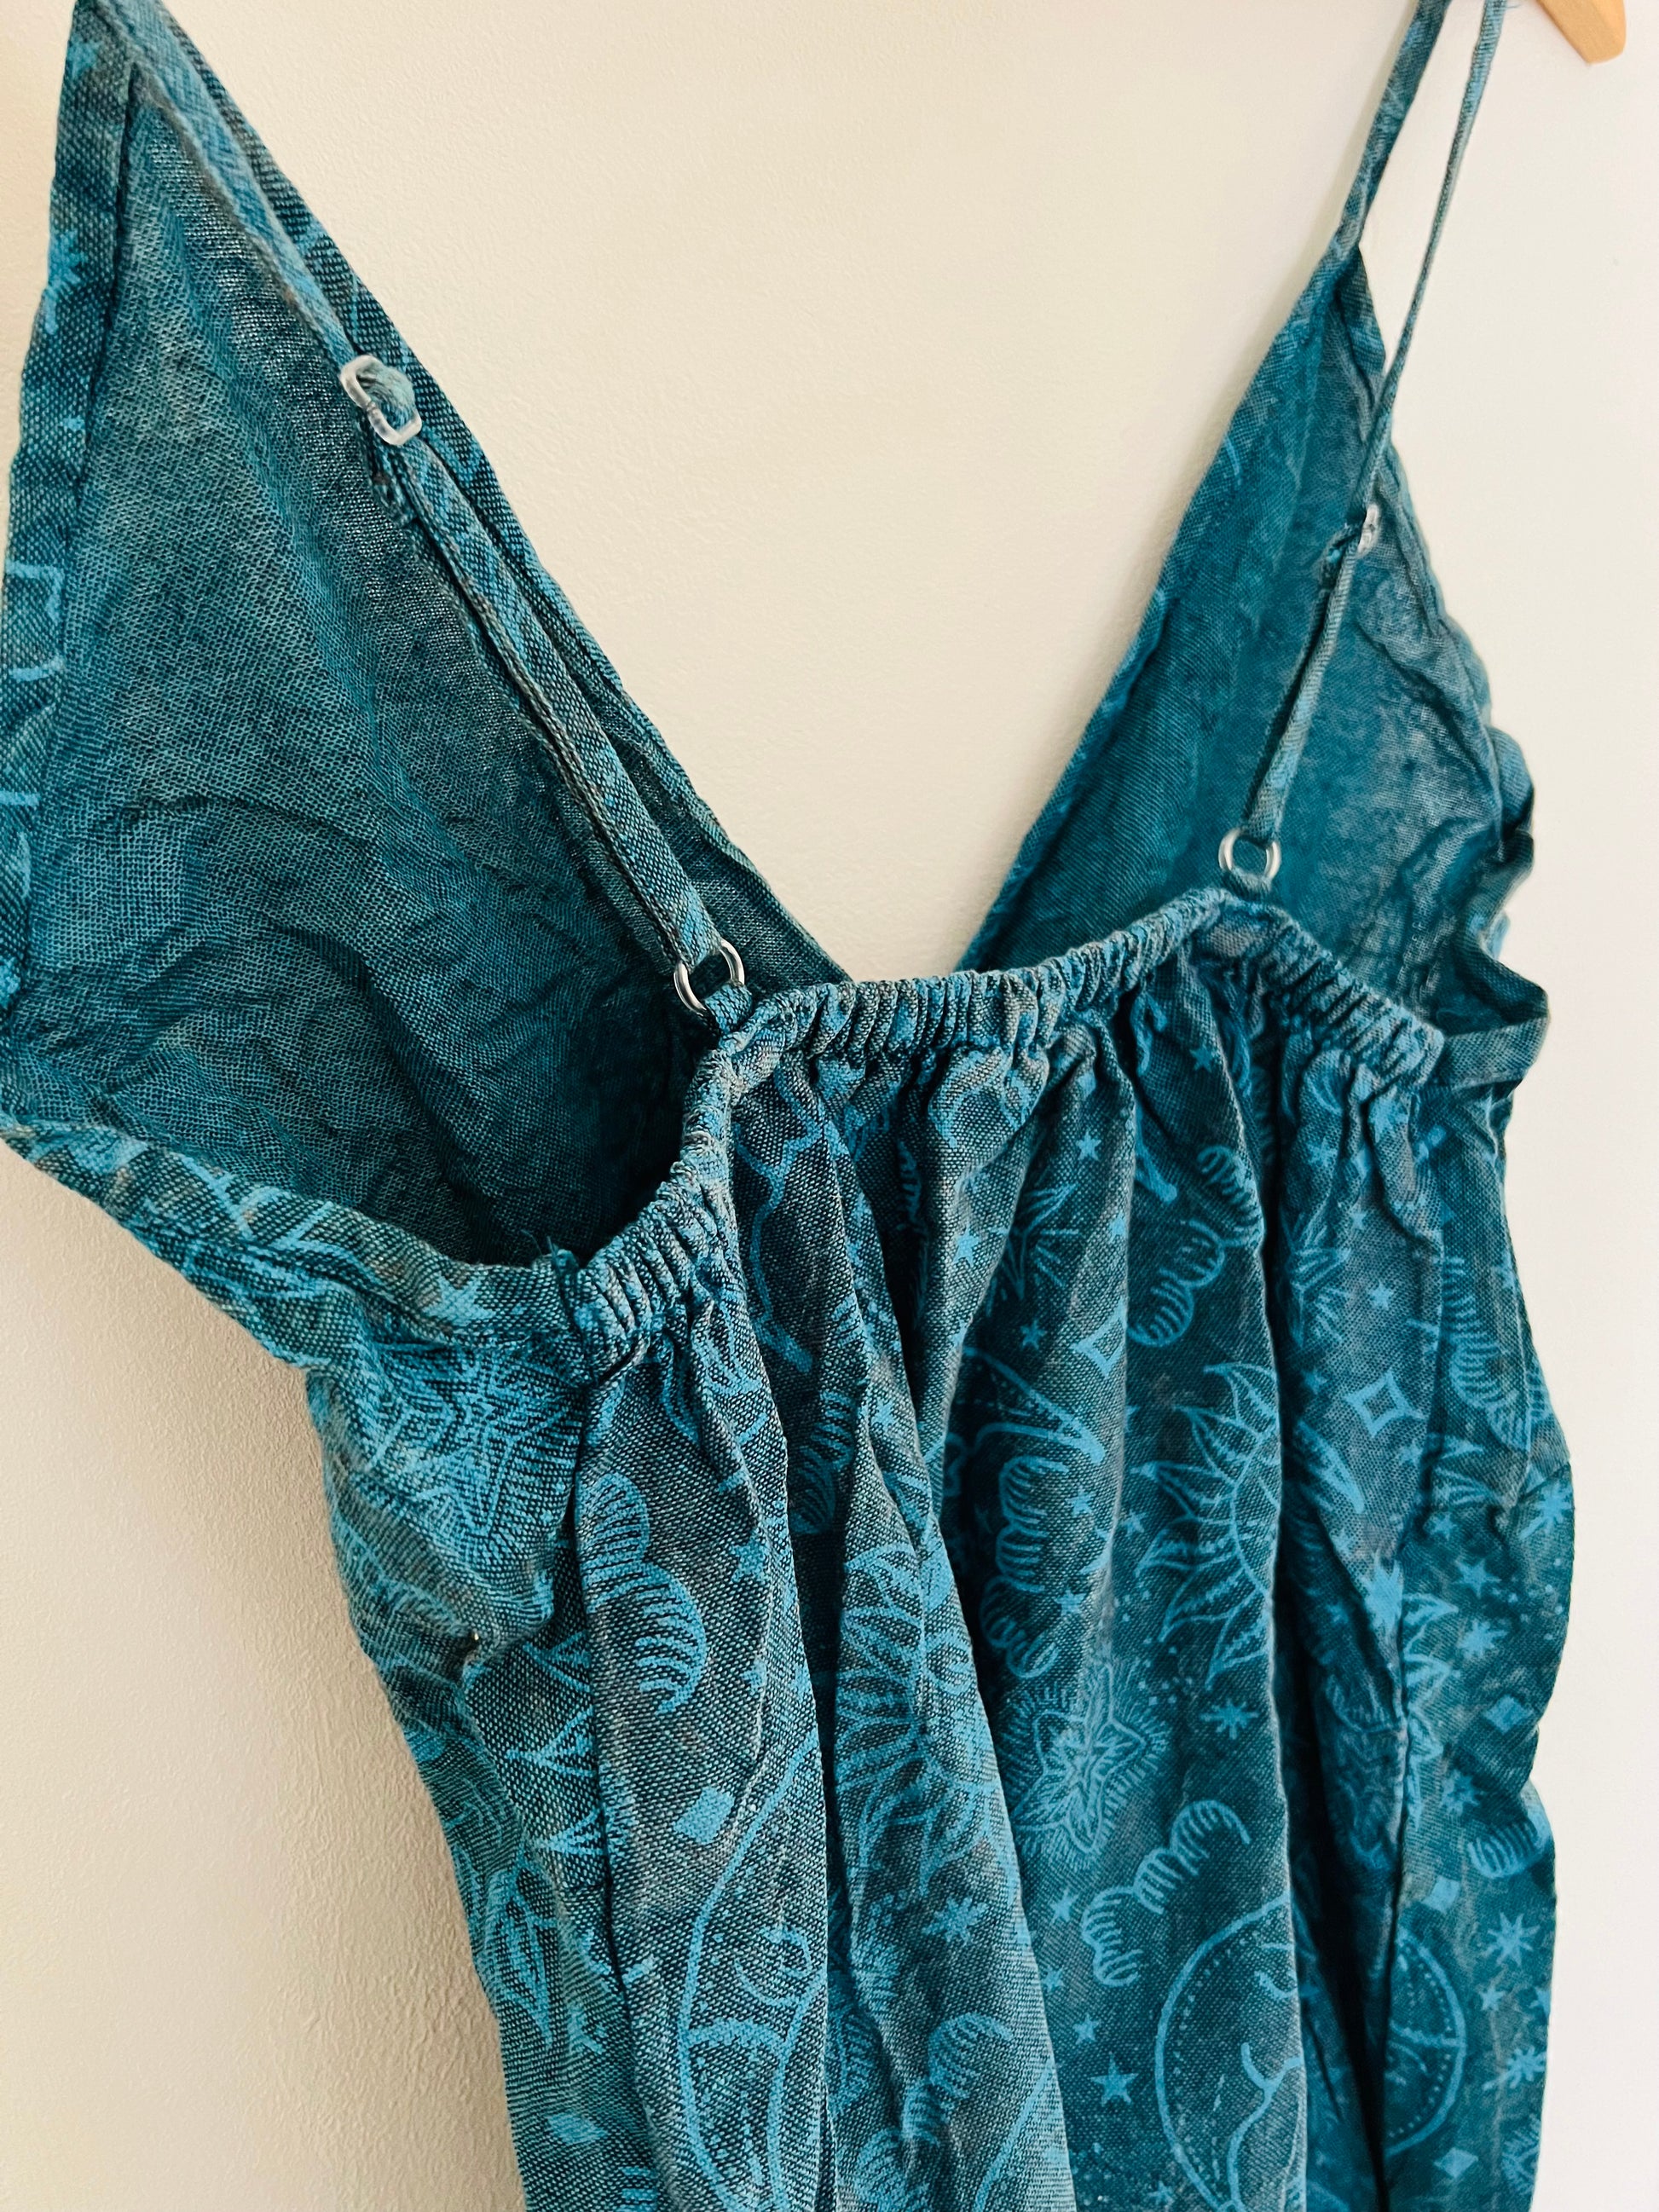 Ocean Blue Summer Dress Hippie Sun & Moon Handmade Fair Trade